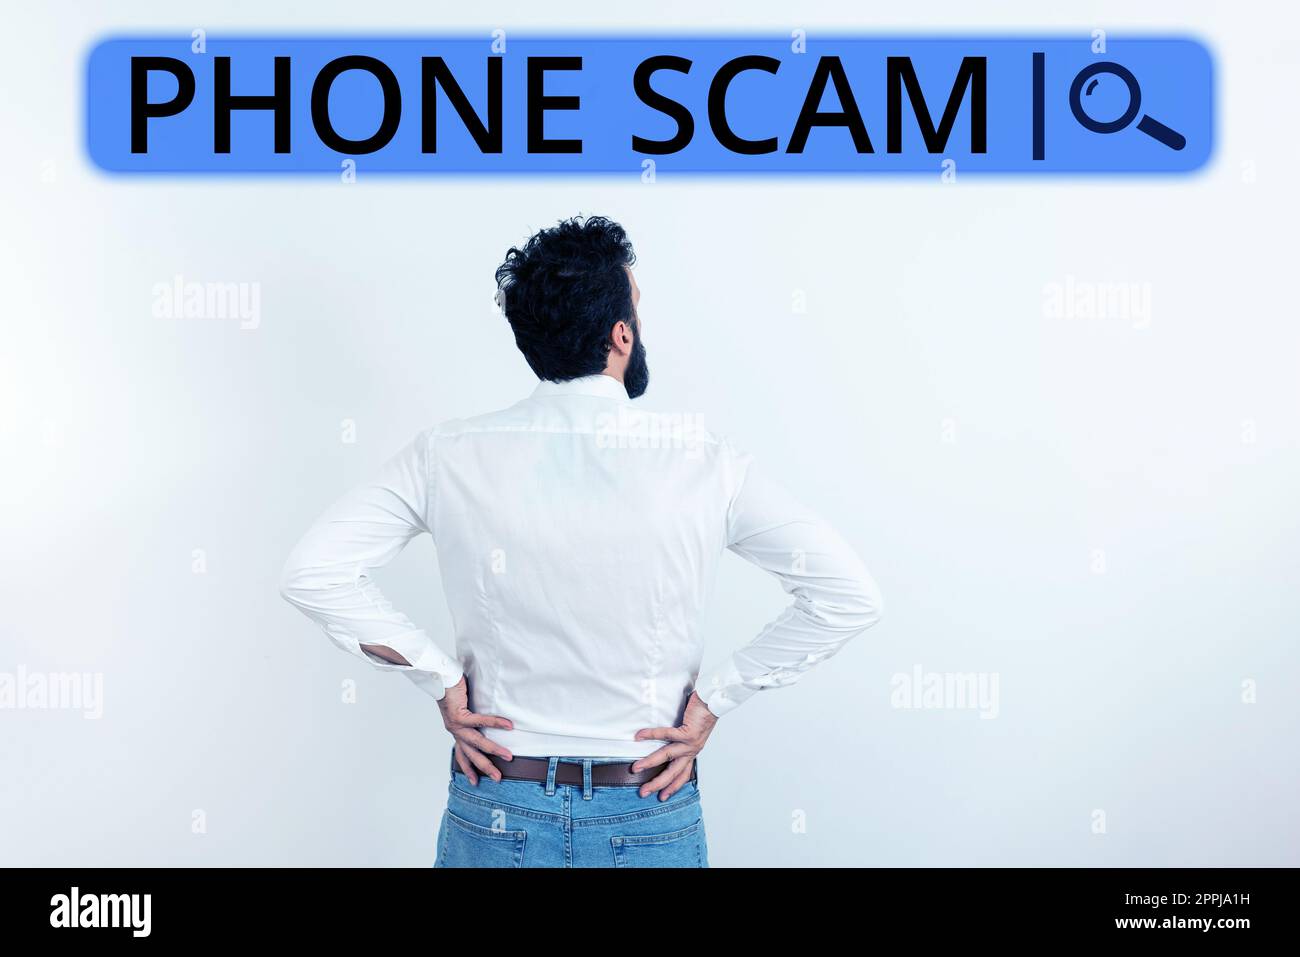 Textschild mit Phone Scam. Geschäftsansatz unerwünschte Anrufe erhalten, um Produkte oder Dienstleistungen zu bewerben Telesales Stockfoto